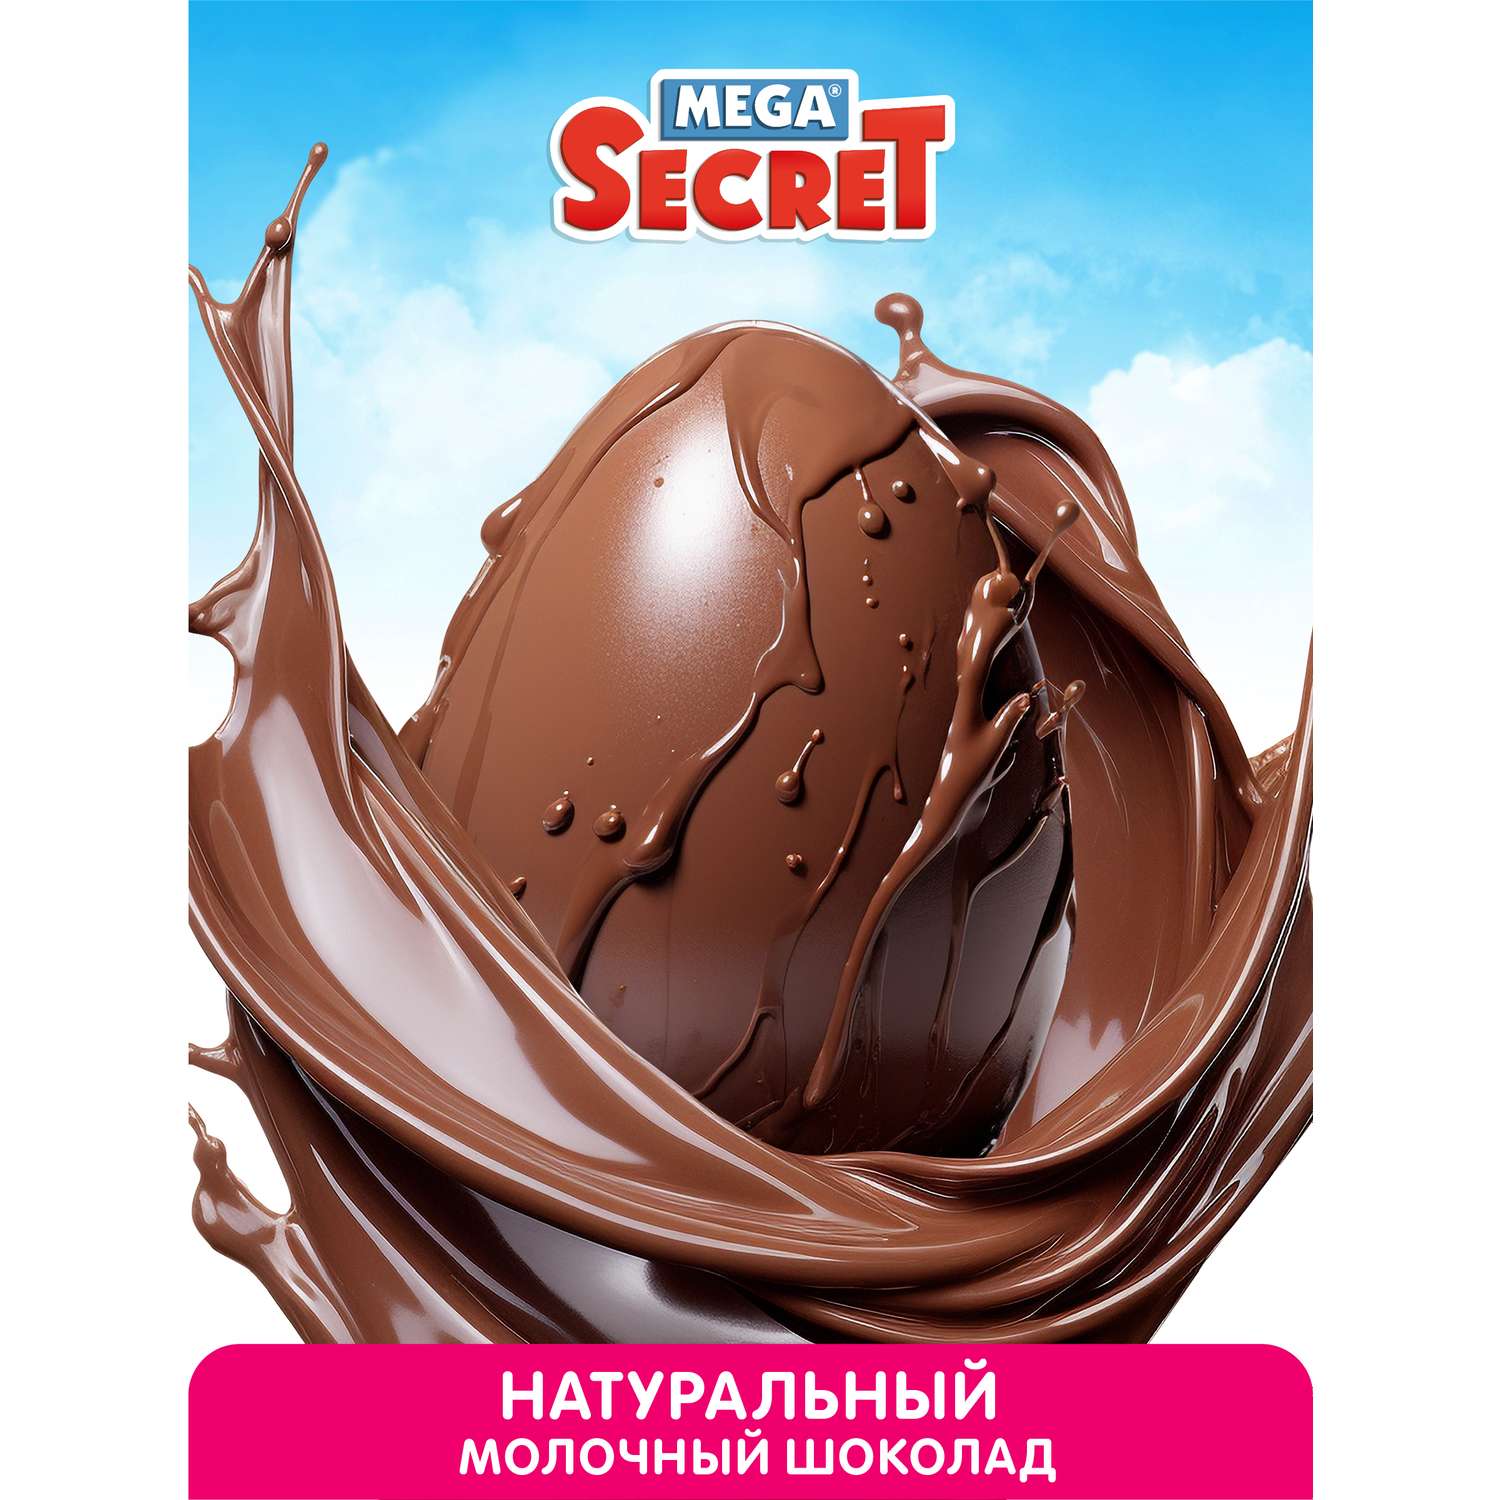 Кондитерские изделия из Финляндии: купить шоколад, леденцы и другие сладости в интернет-магазине